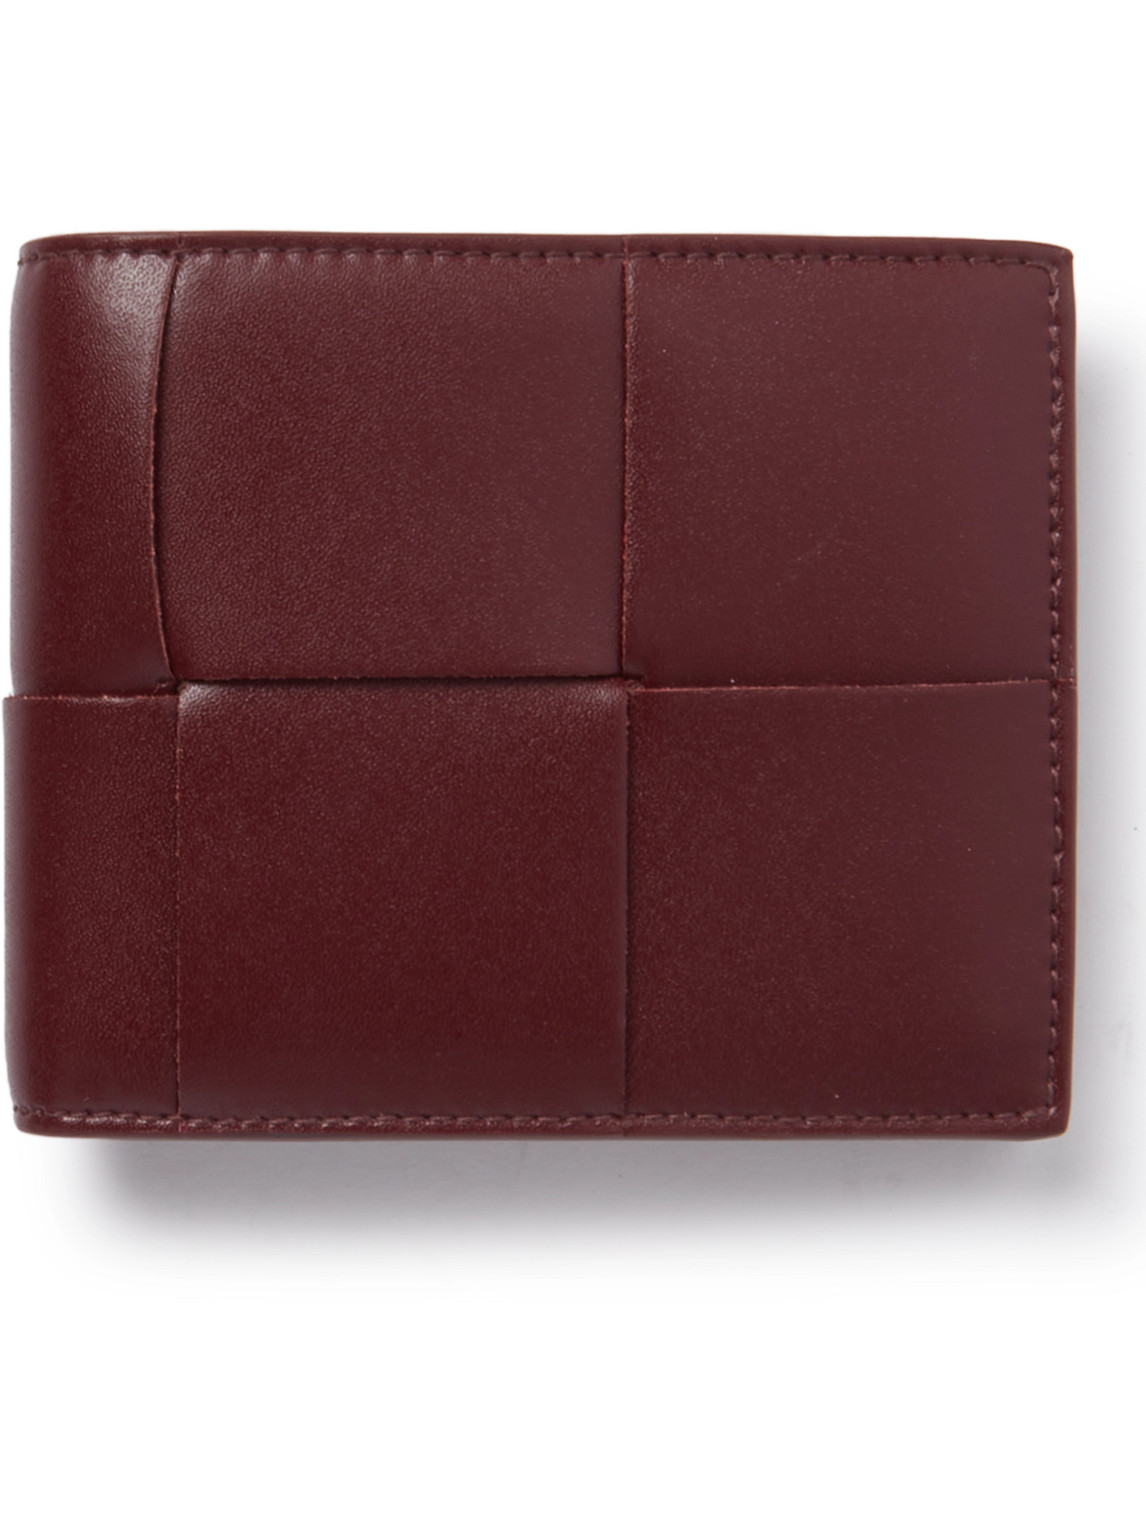 Bottega Veneta - Cassette Intrecciato Leather Billfold Wallet - Men - Burgundy